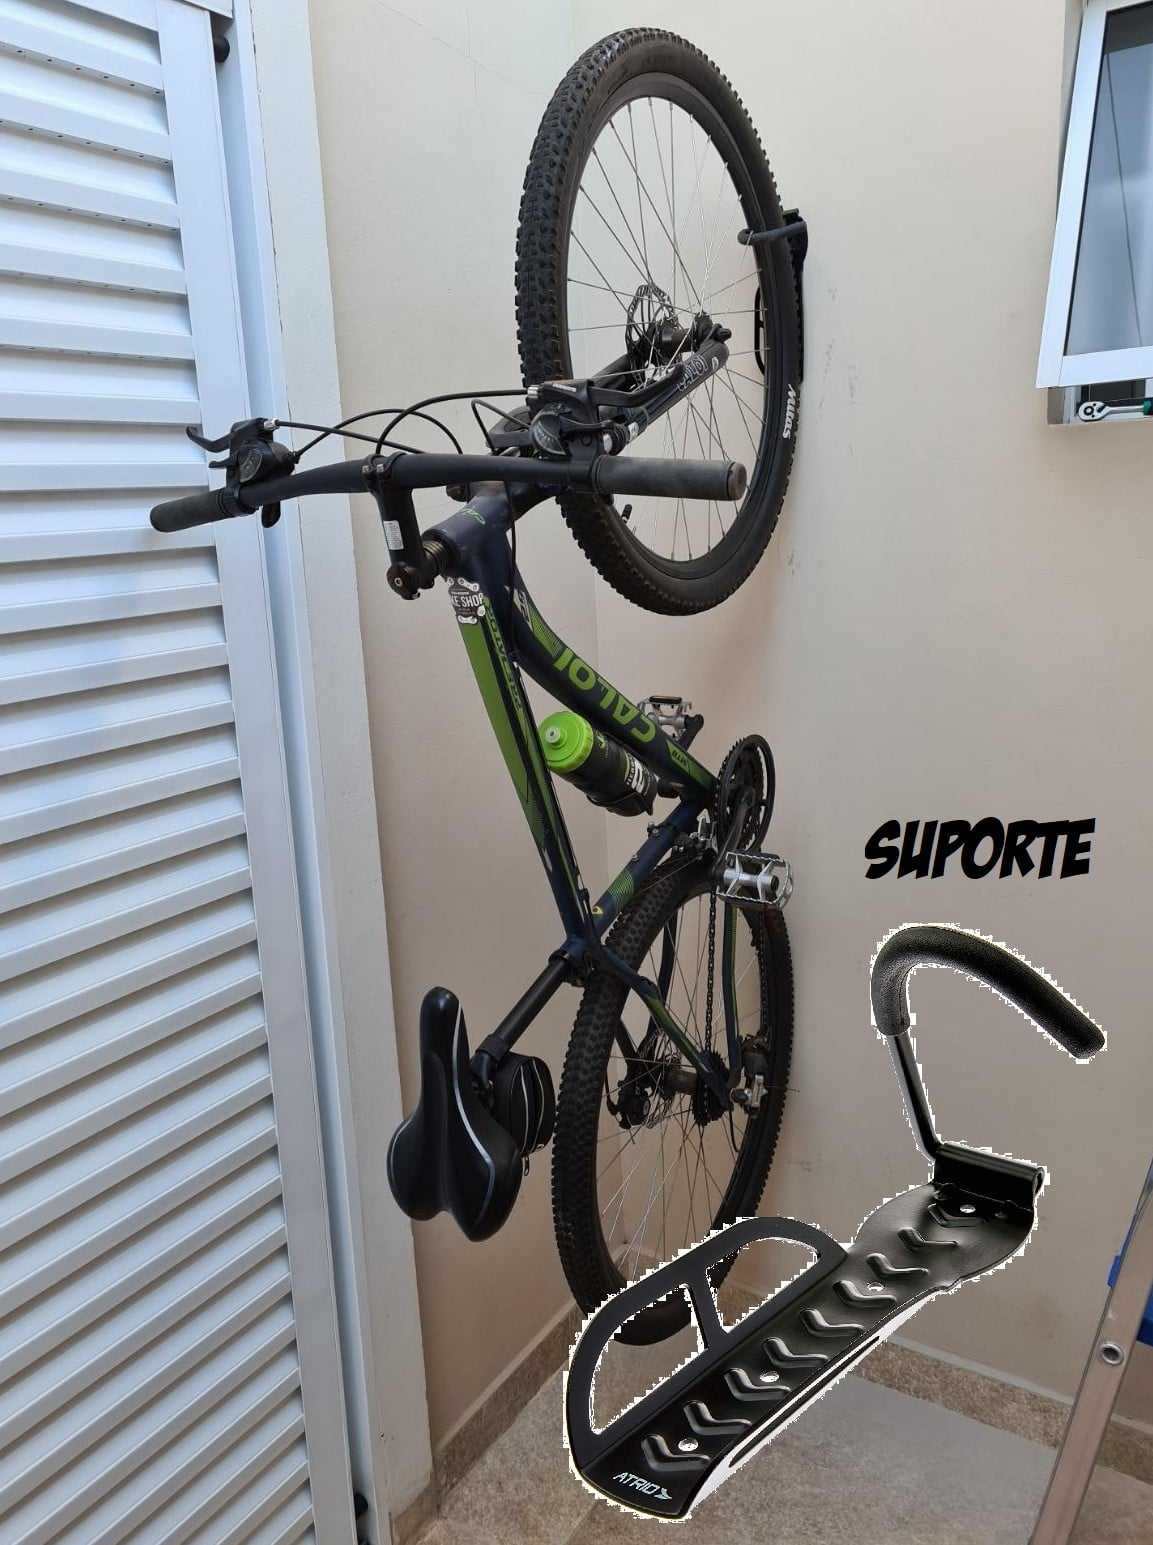 Suporte de Parede Atrio para Bicicleta até 20Kg com Gancho Acolchoado Material em Aço e Borracha Preto – BI054